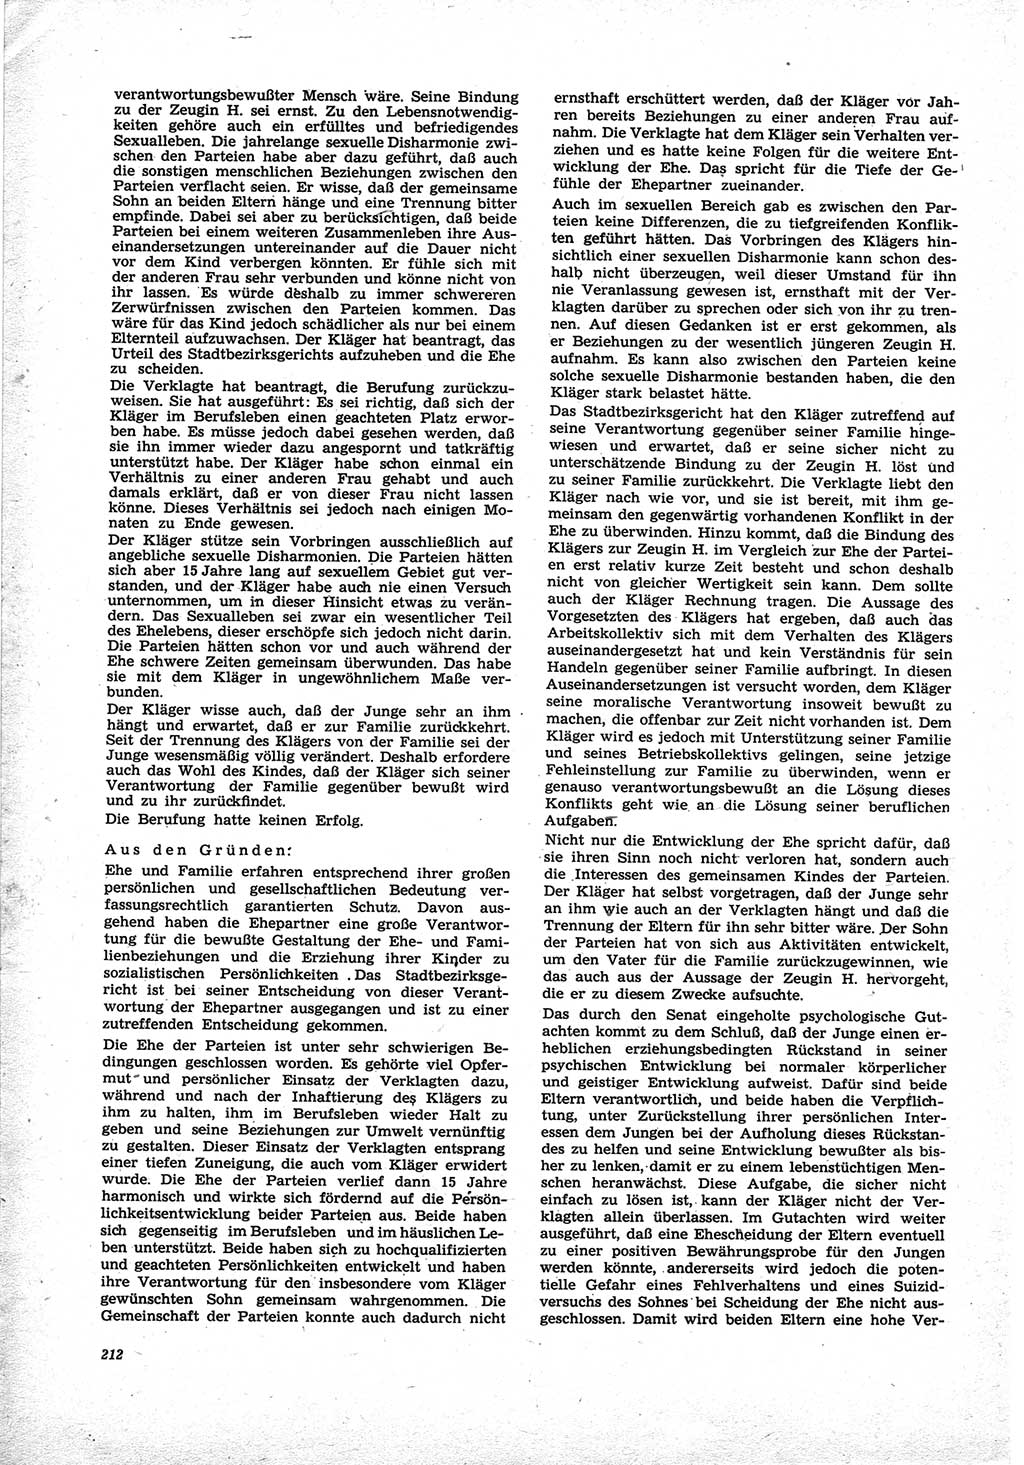 Neue Justiz (NJ), Zeitschrift für Recht und Rechtswissenschaft [Deutsche Demokratische Republik (DDR)], 25. Jahrgang 1971, Seite 212 (NJ DDR 1971, S. 212)